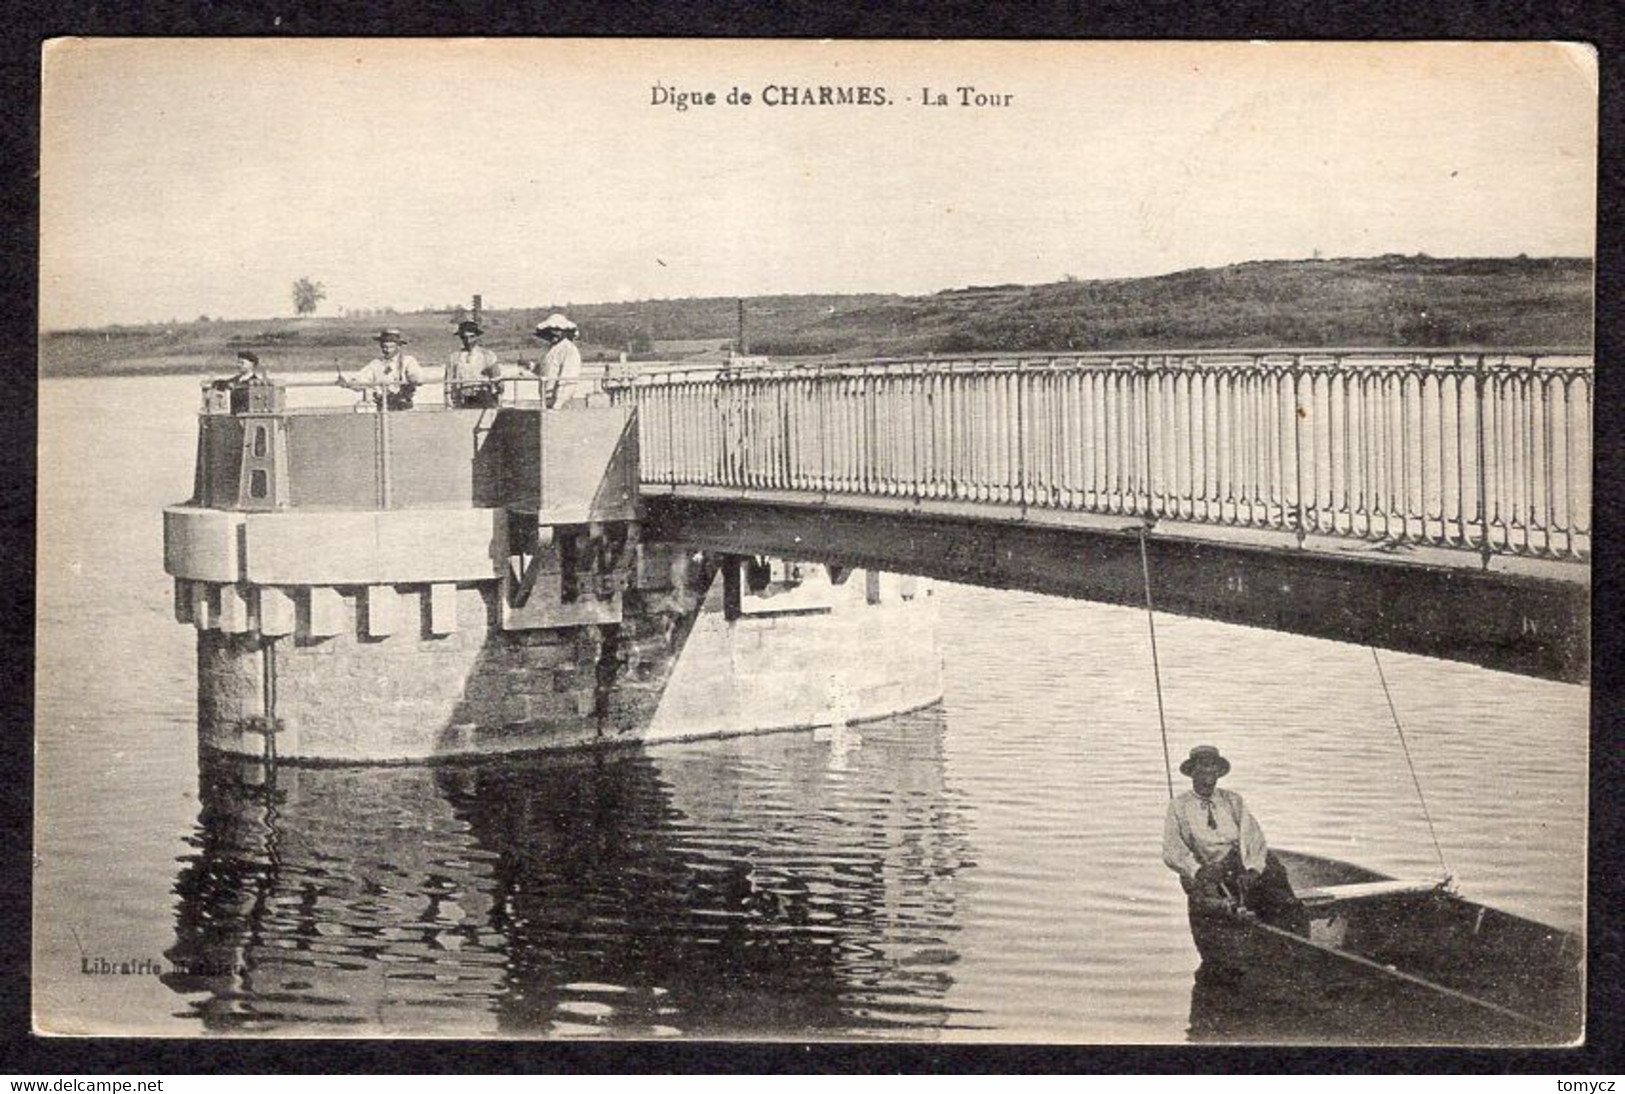 Postcard Digue De Charmes - La Tour ... 191?-2?, Not Used - Charmes